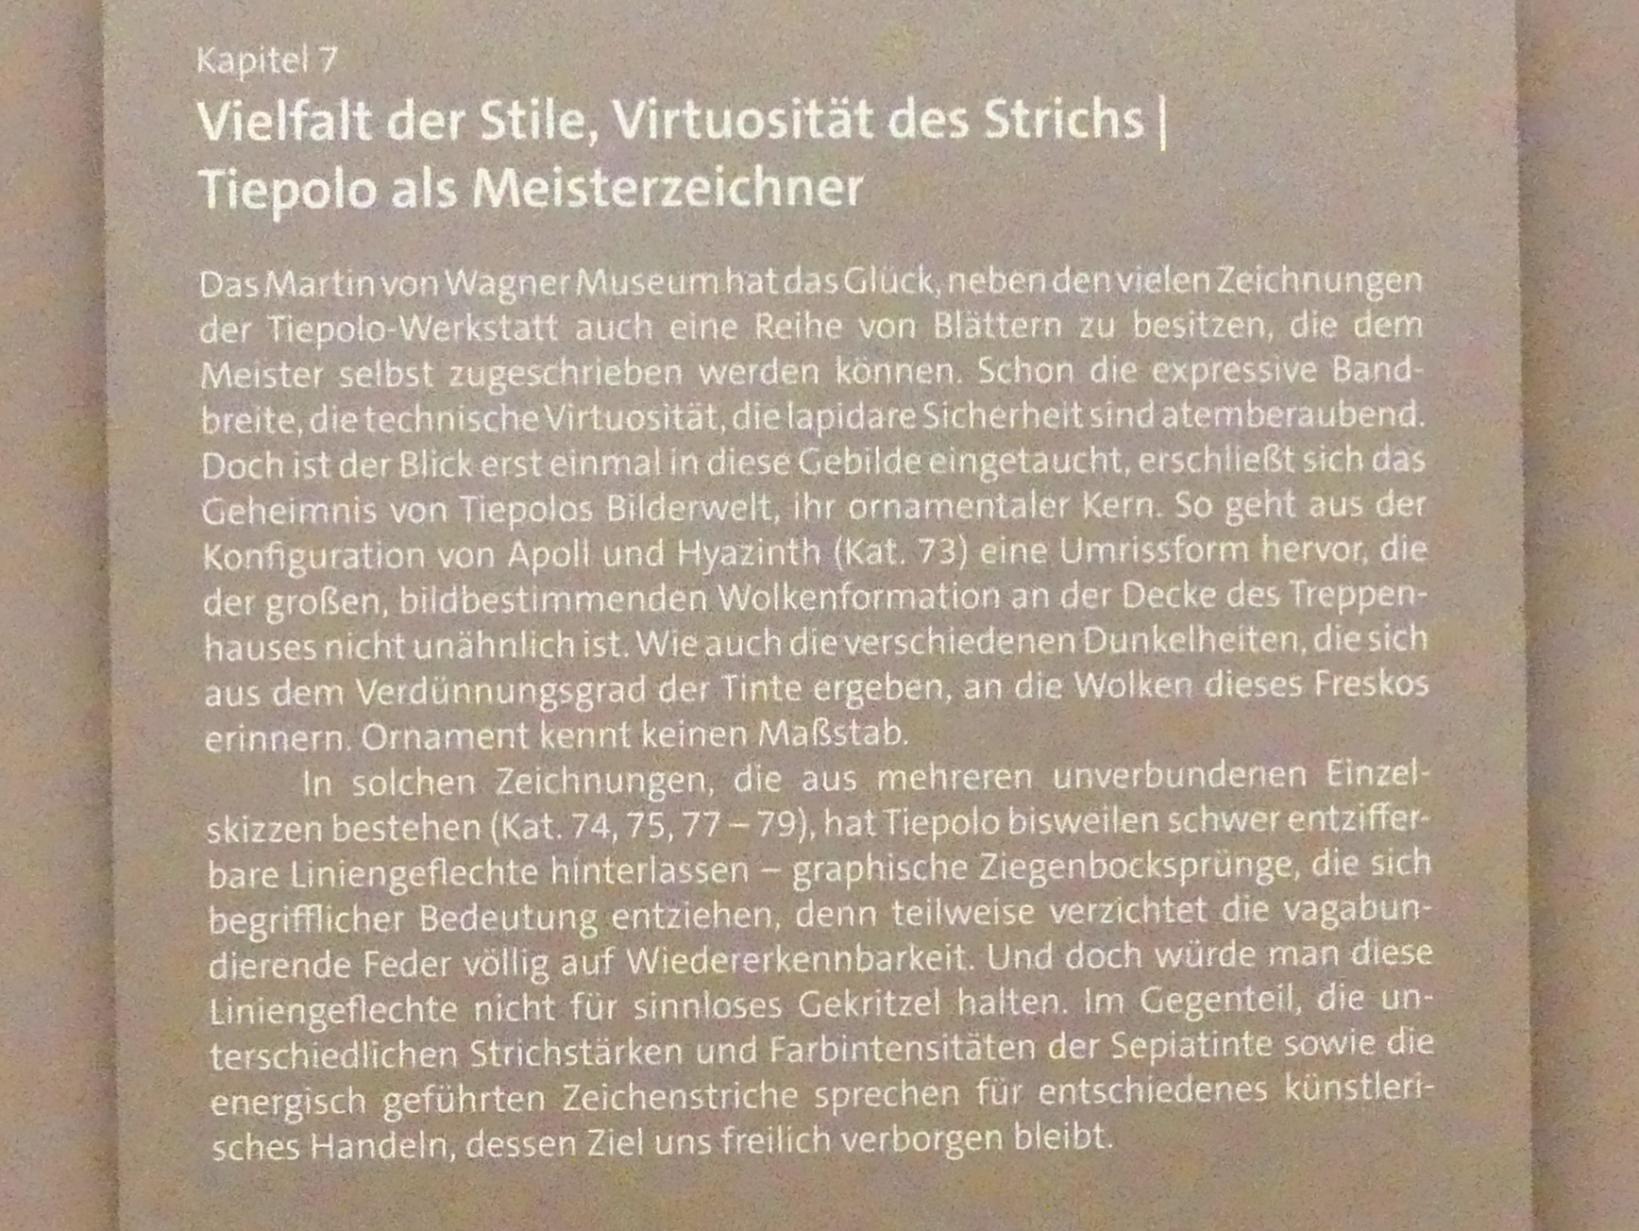 Würzburg, Martin von Wagner Museum, Ausstellung "Tiepolo und seine Zeit in Würzburg" vom 31.10.2020-15.07.2021, Bild 9/12